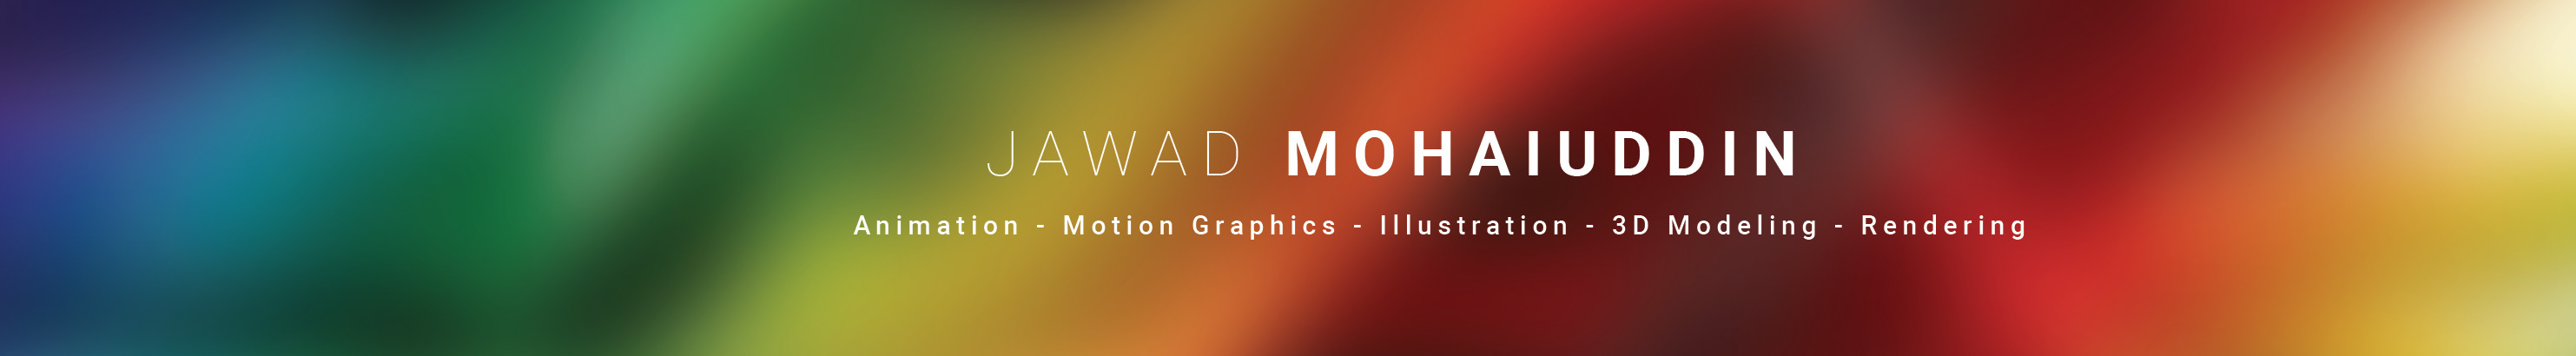 Jawad Mohaiuddin profil başlığı